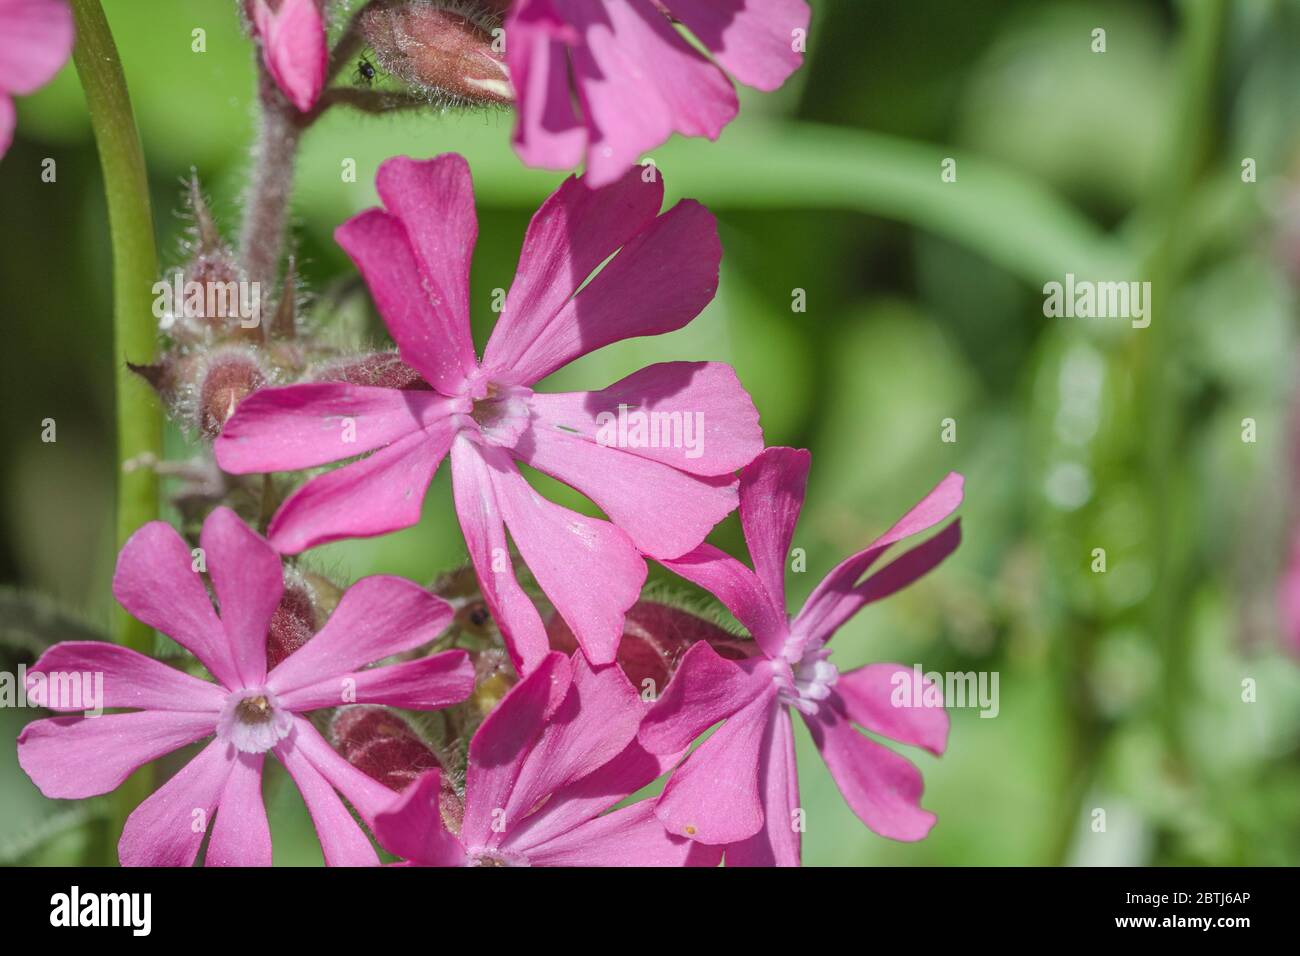 Schließen Makroaufnahme der rosa Blüten von Red Campion / Silene dioica im Sommer Sonnenschein. Gewöhnliches Heckengraskraut in Großbritannien. Stockfoto